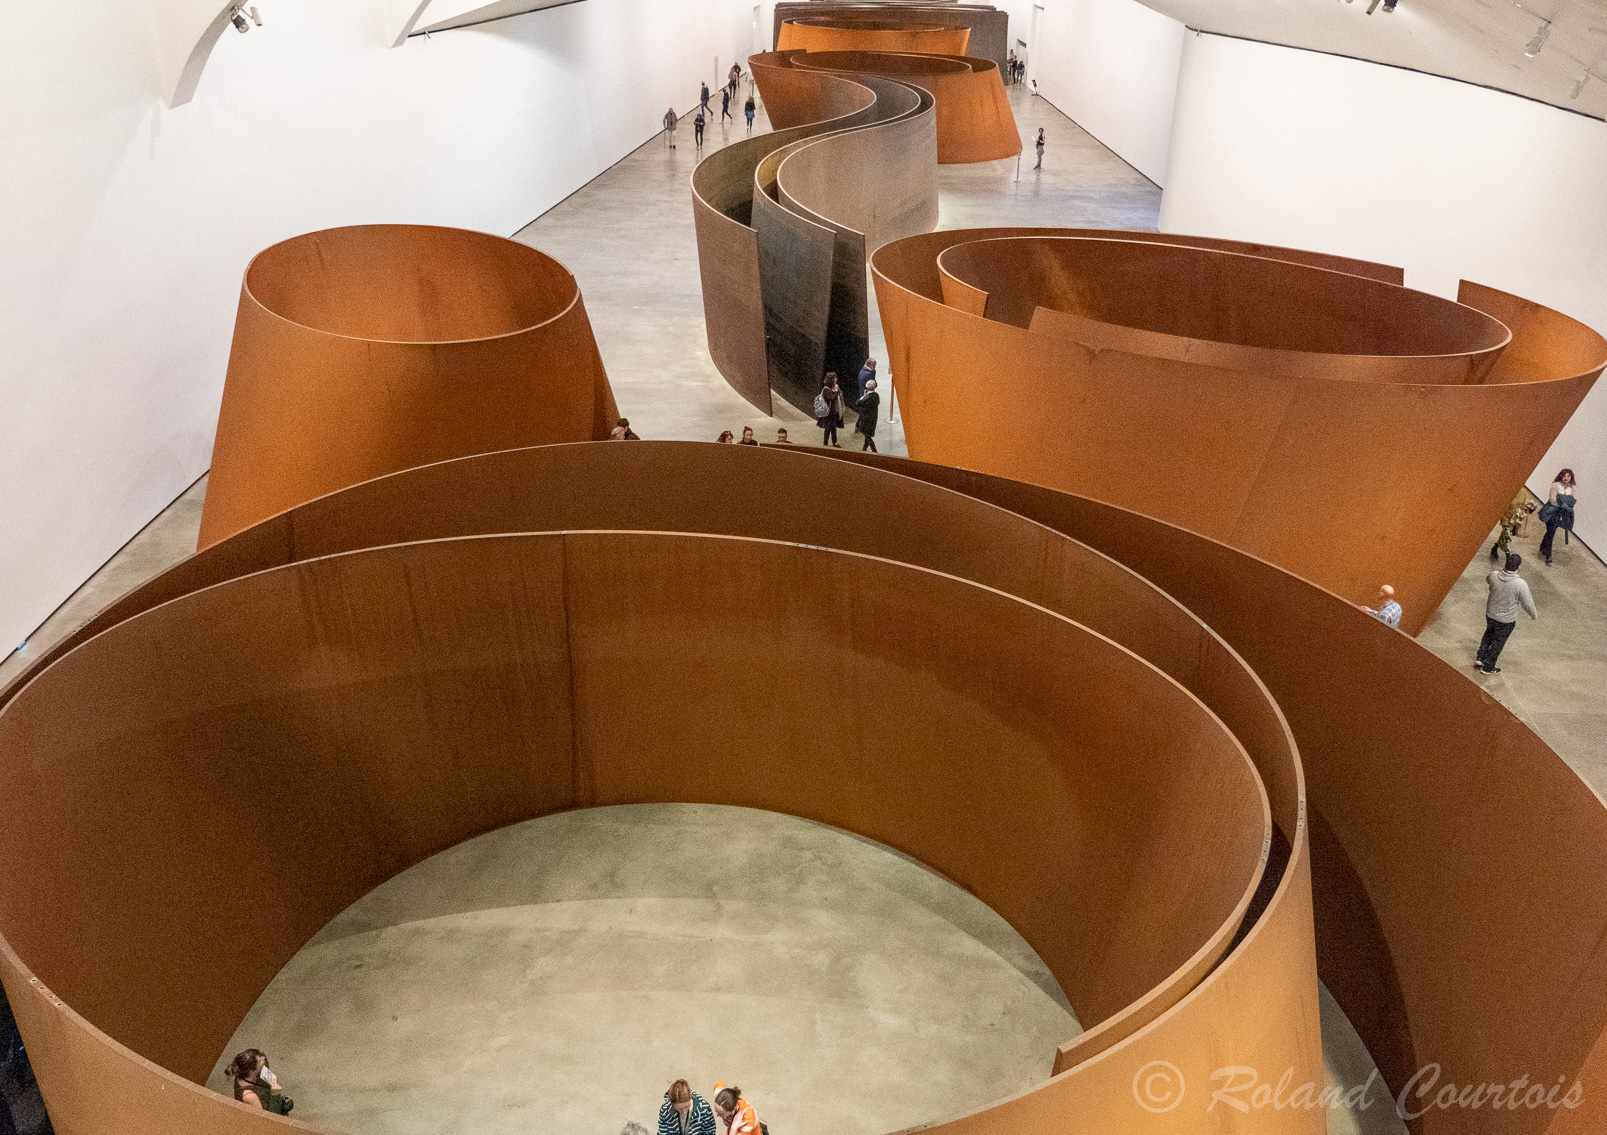 "La Matière du Temps », par Richard Serra, (né le 2 novembre 19391 à San Francisco), Il est rattaché au minimalisme et est connu pour ses sculptures en métal. (Expo permanente)